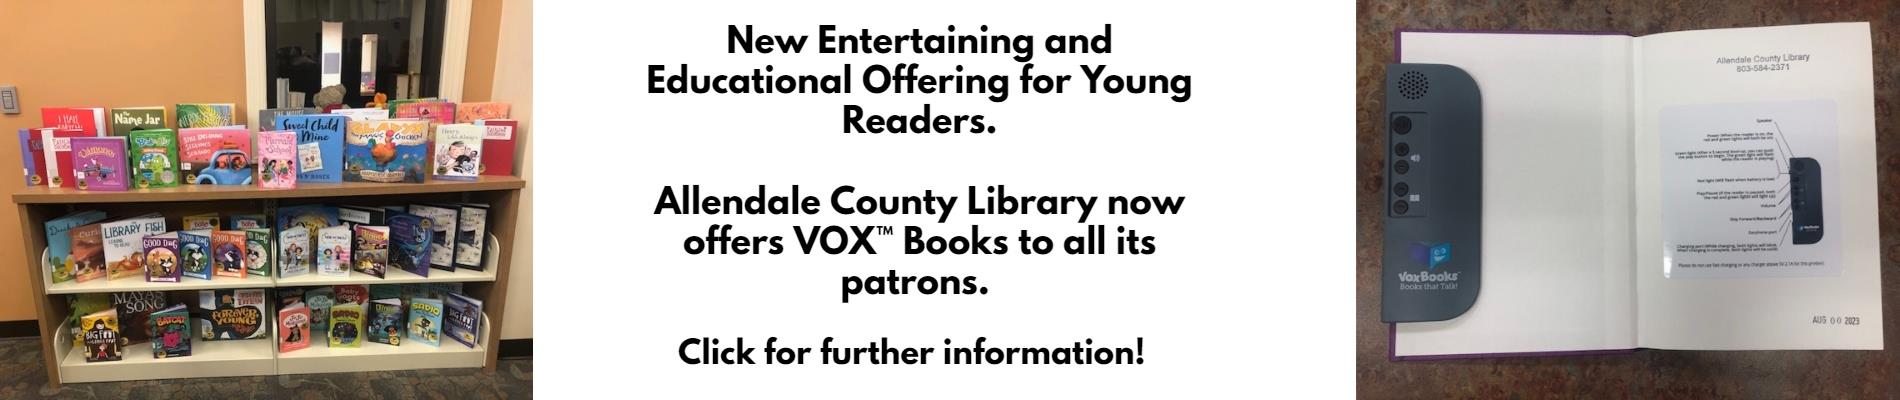 Vox Books